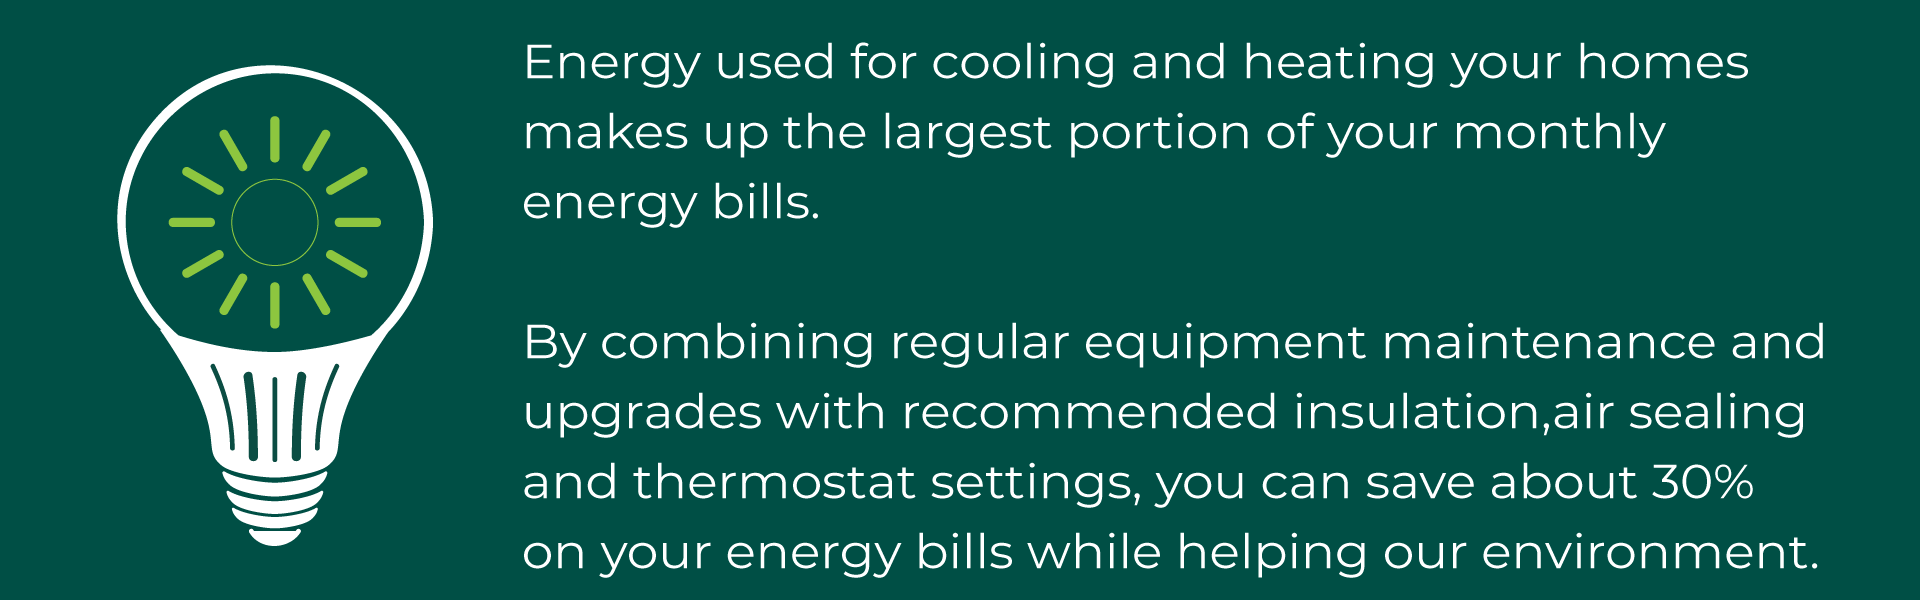 Energy efficiency tip